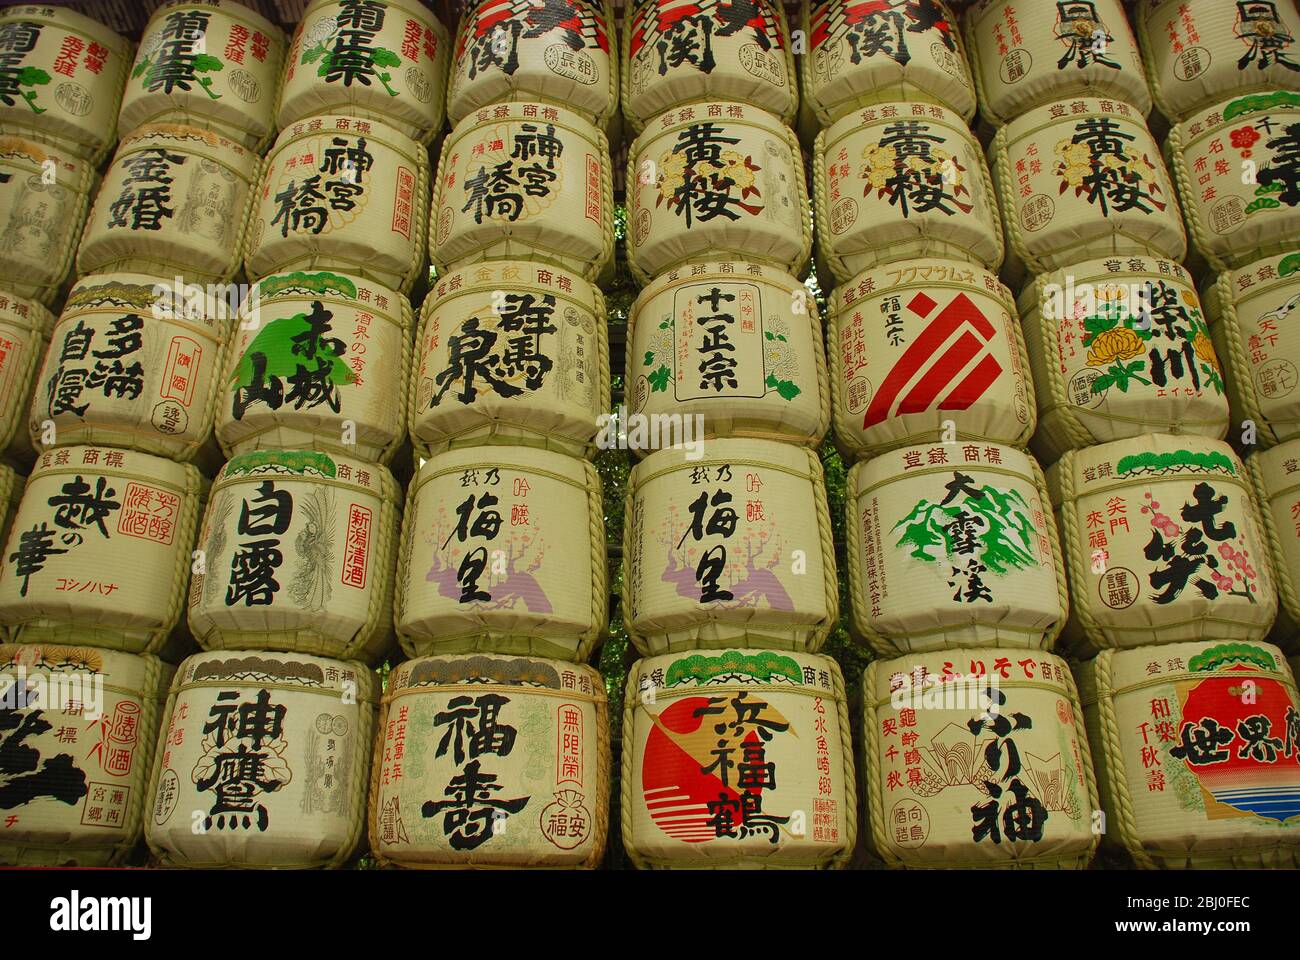 Una mostra di botti di sake nei giardini del Tempio Meiji Jingu a Tokyo Foto Stock